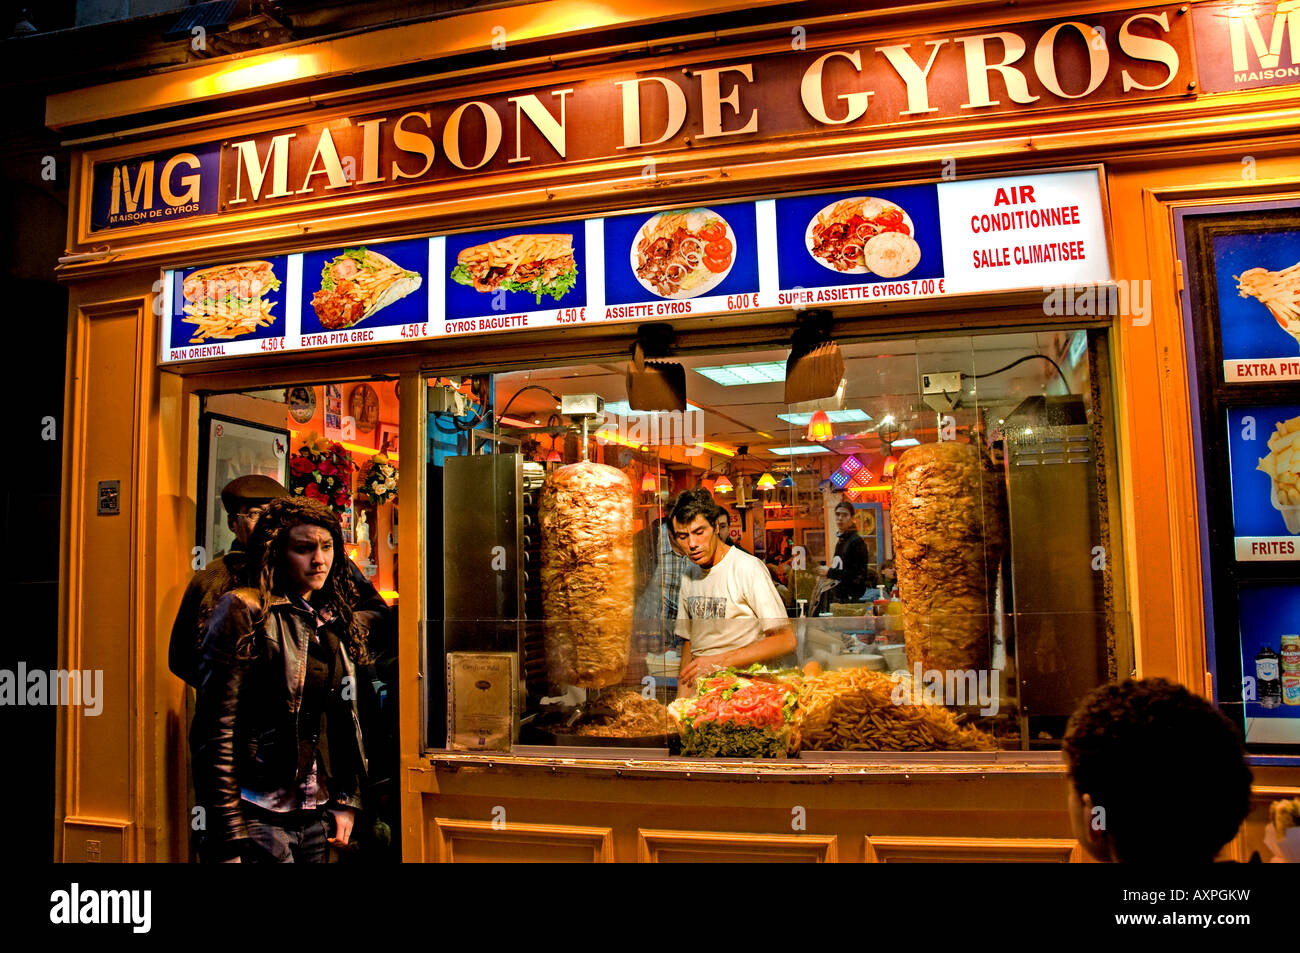 Paris The Latin Quarter Quartier latin north africa african arab maroc Morocco Algeria Algerian Tunisia Tunisian kebab Stock Photo